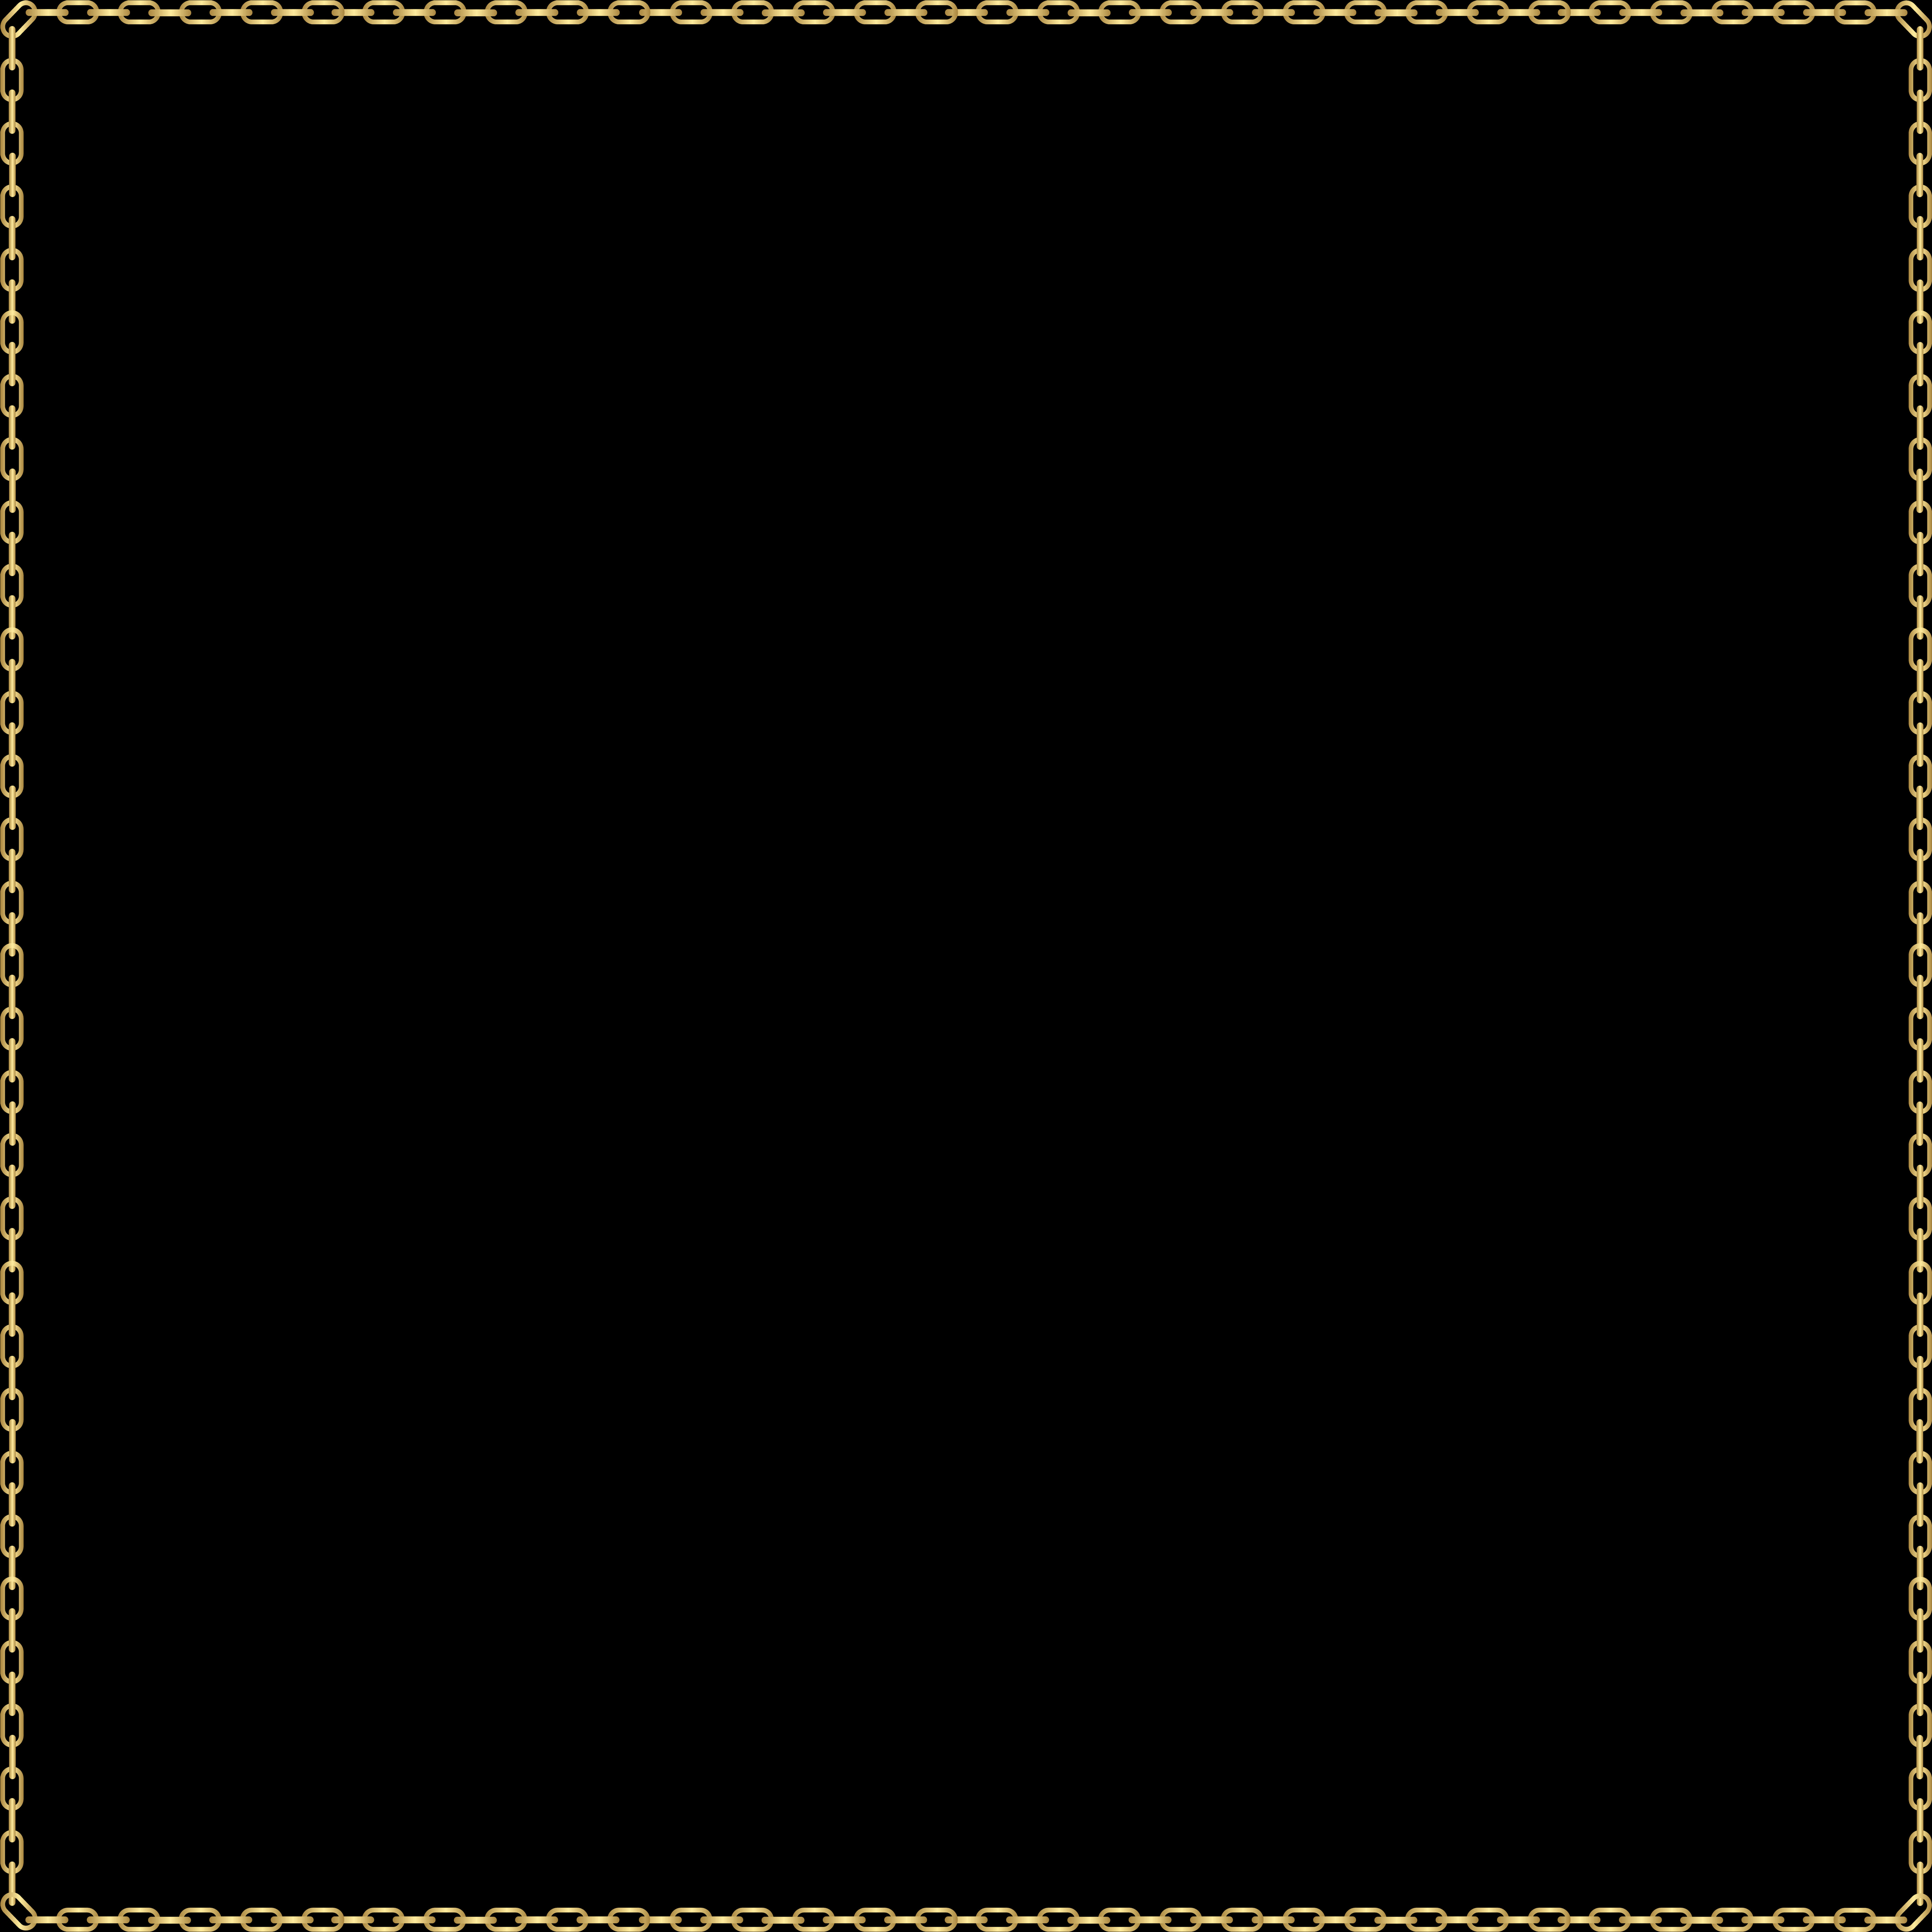 Elegant Gold Chain Border Design PNG image